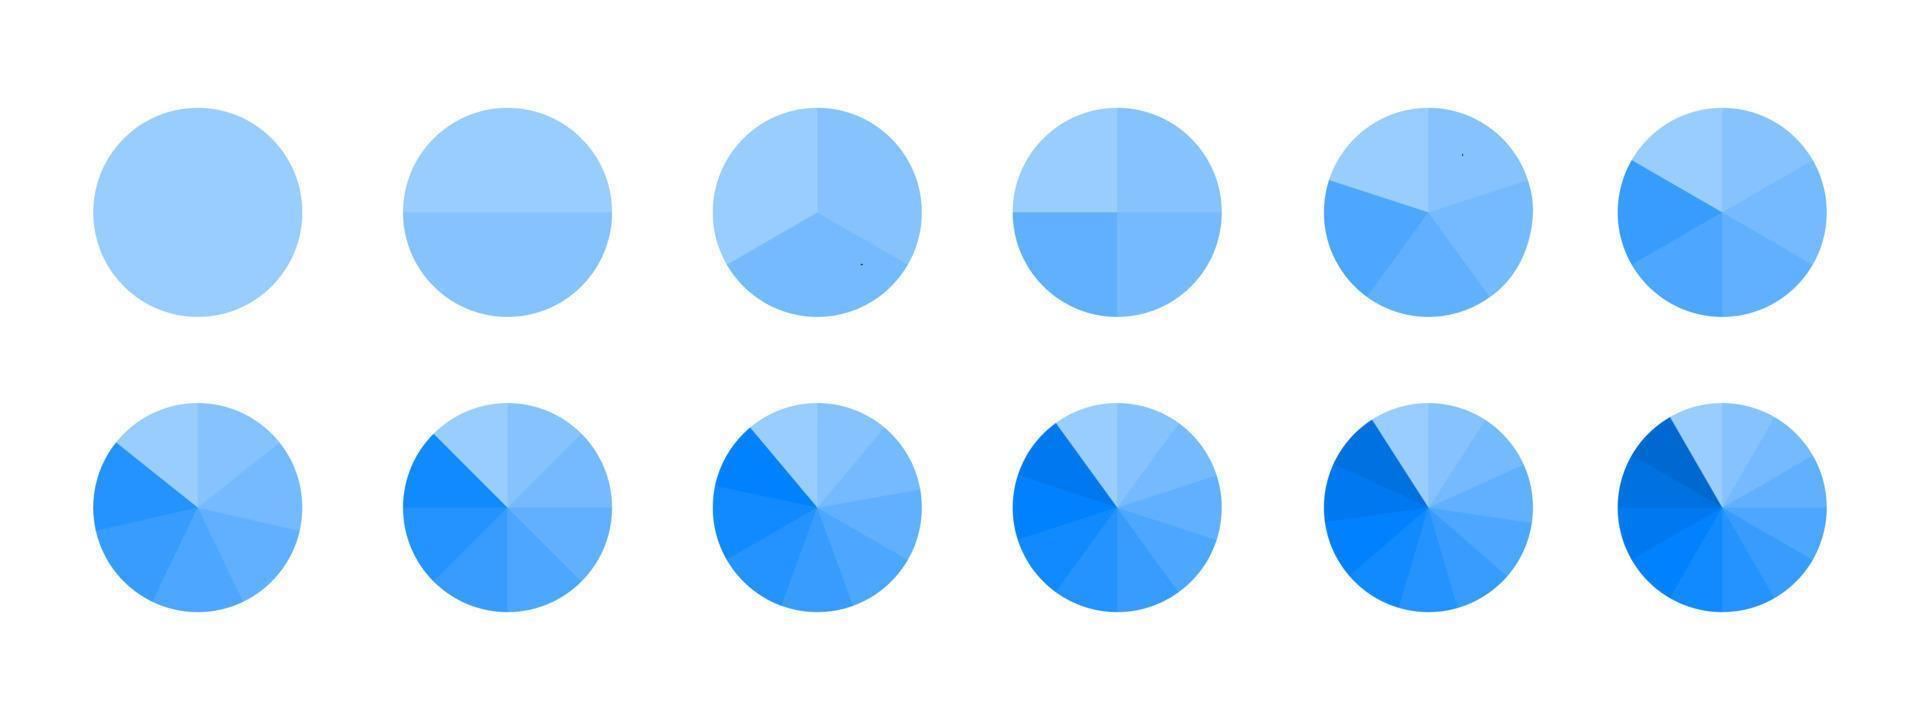 Kreise unterteilt in monochrome blaue Segmente von 1 bis 12 isoliert auf weißem Hintergrund. Kreisdiagramm für Statistik-Infografik-Beispiele. runde Formen in gleiche Scheiben geschnitten vektor